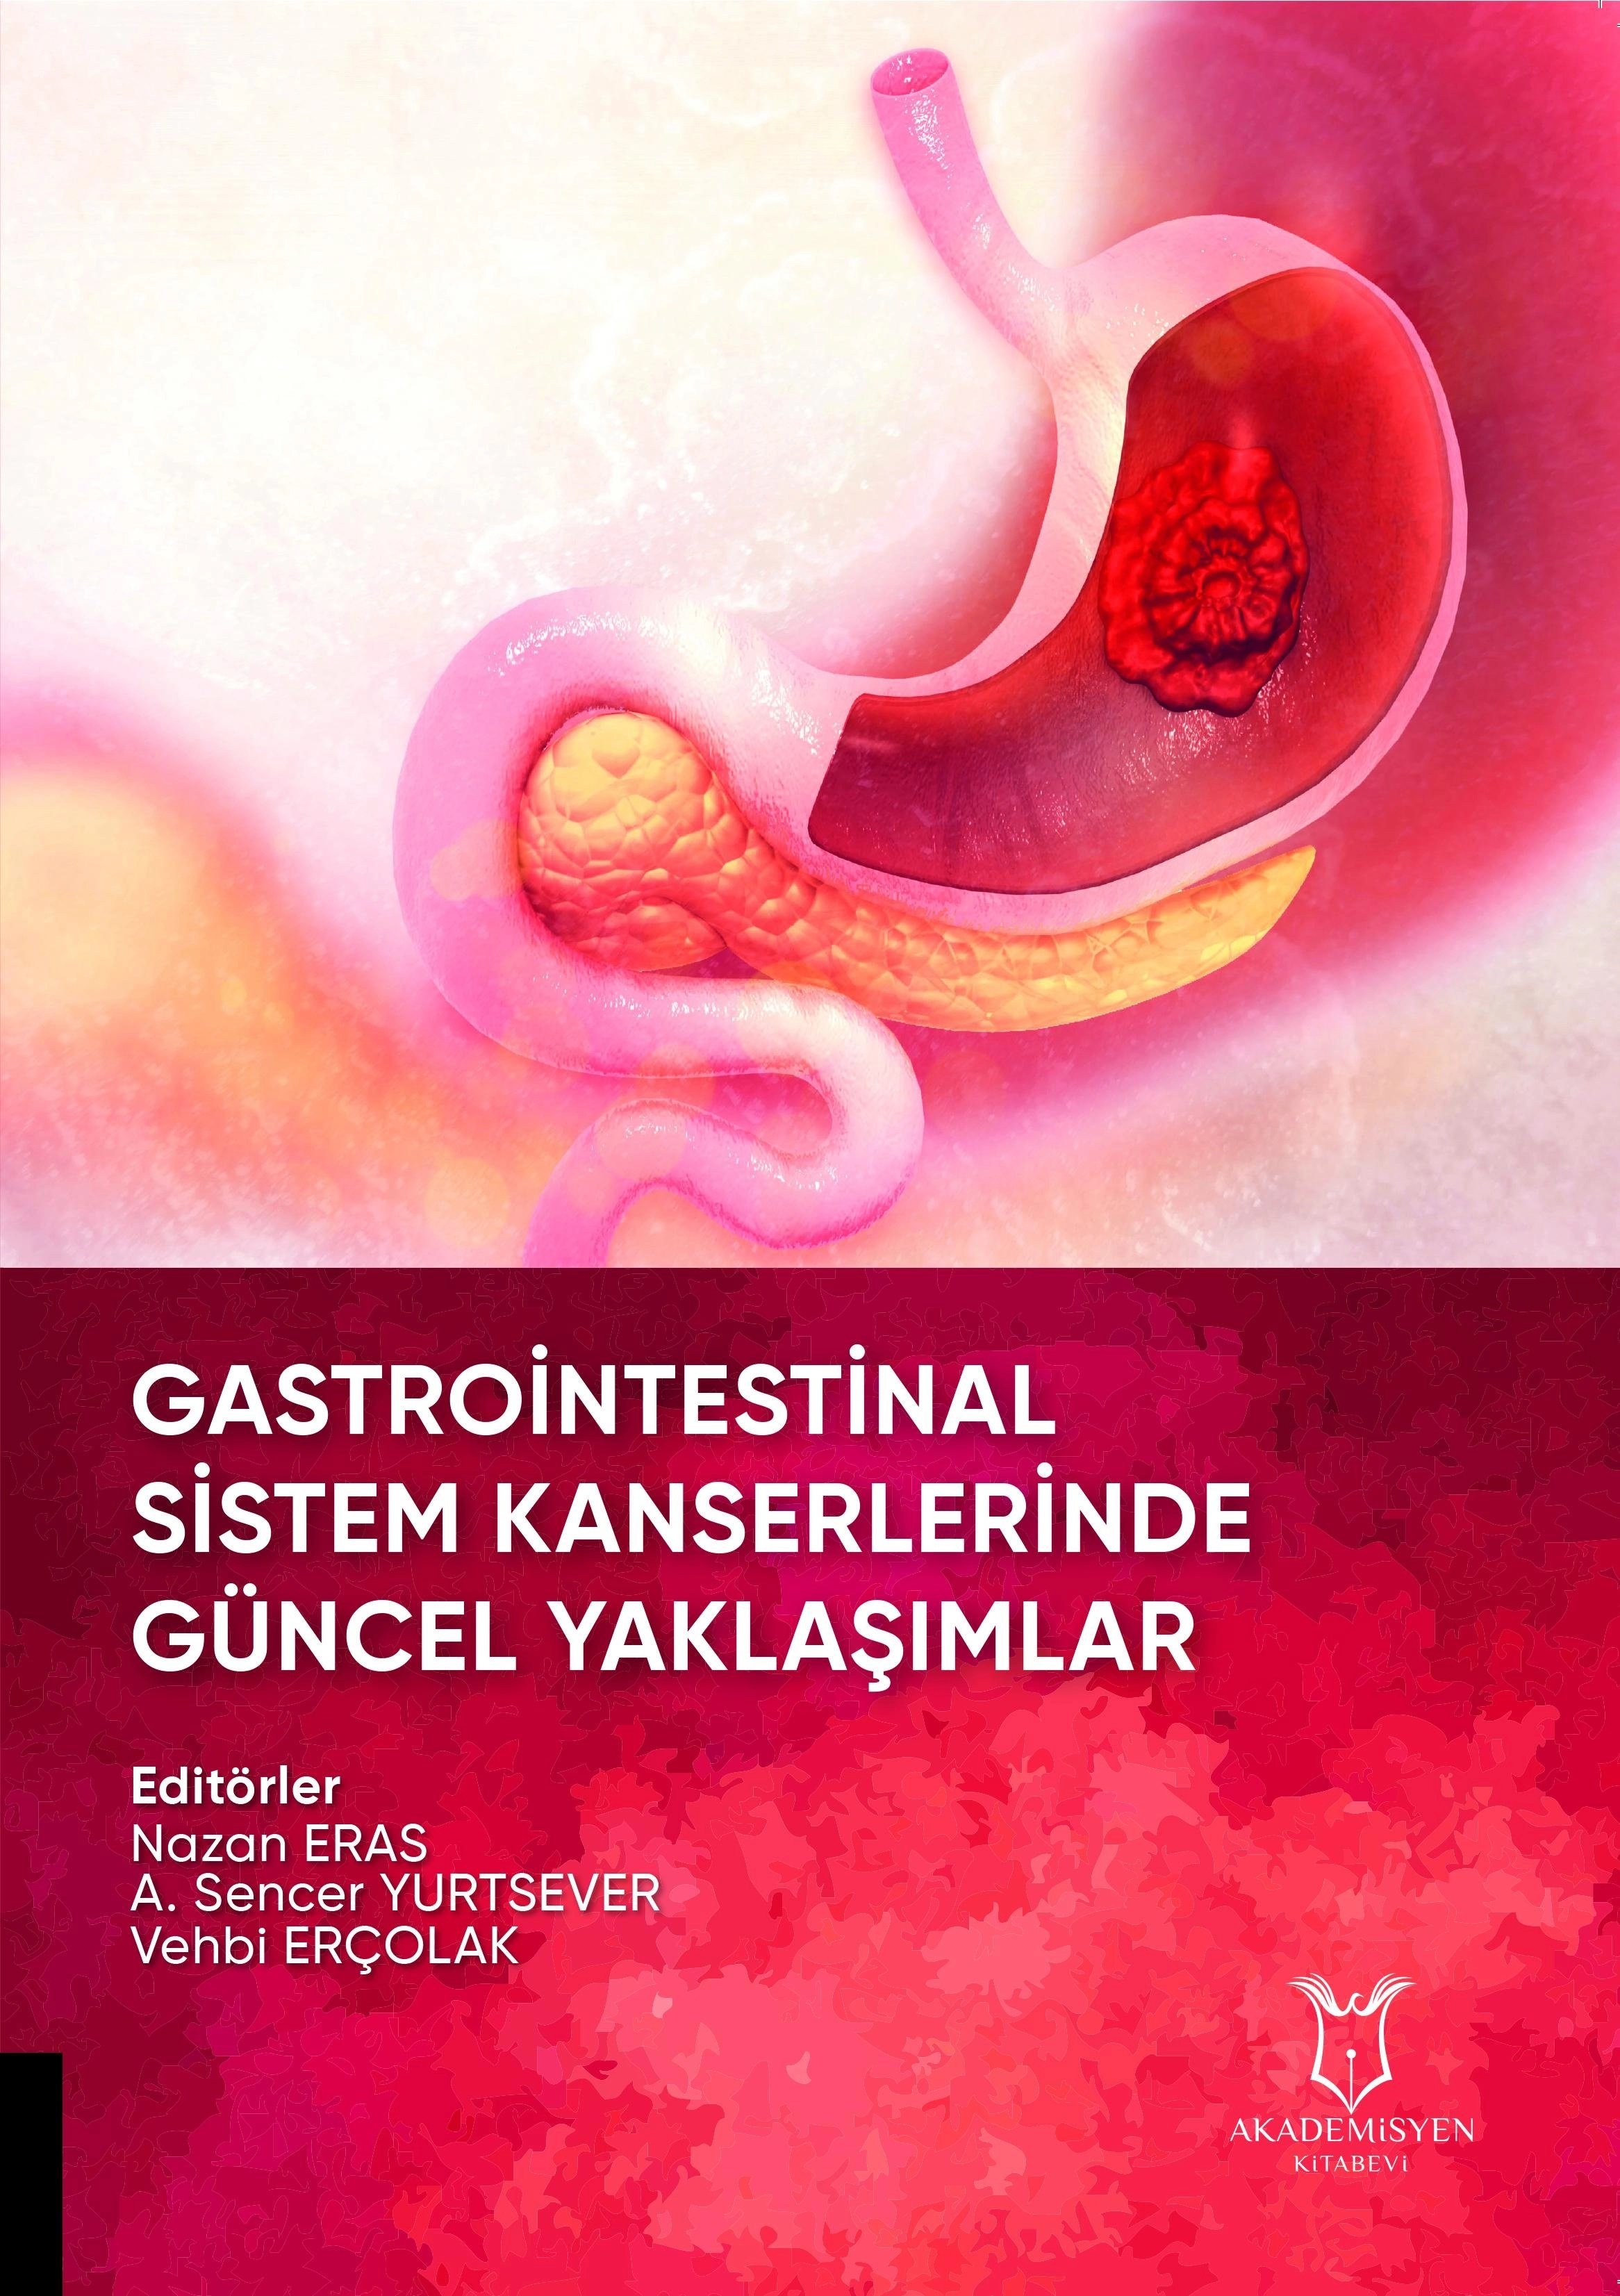 Gastrointestinal Sistem Kanserlerinde Güncel Yaklaşımlar